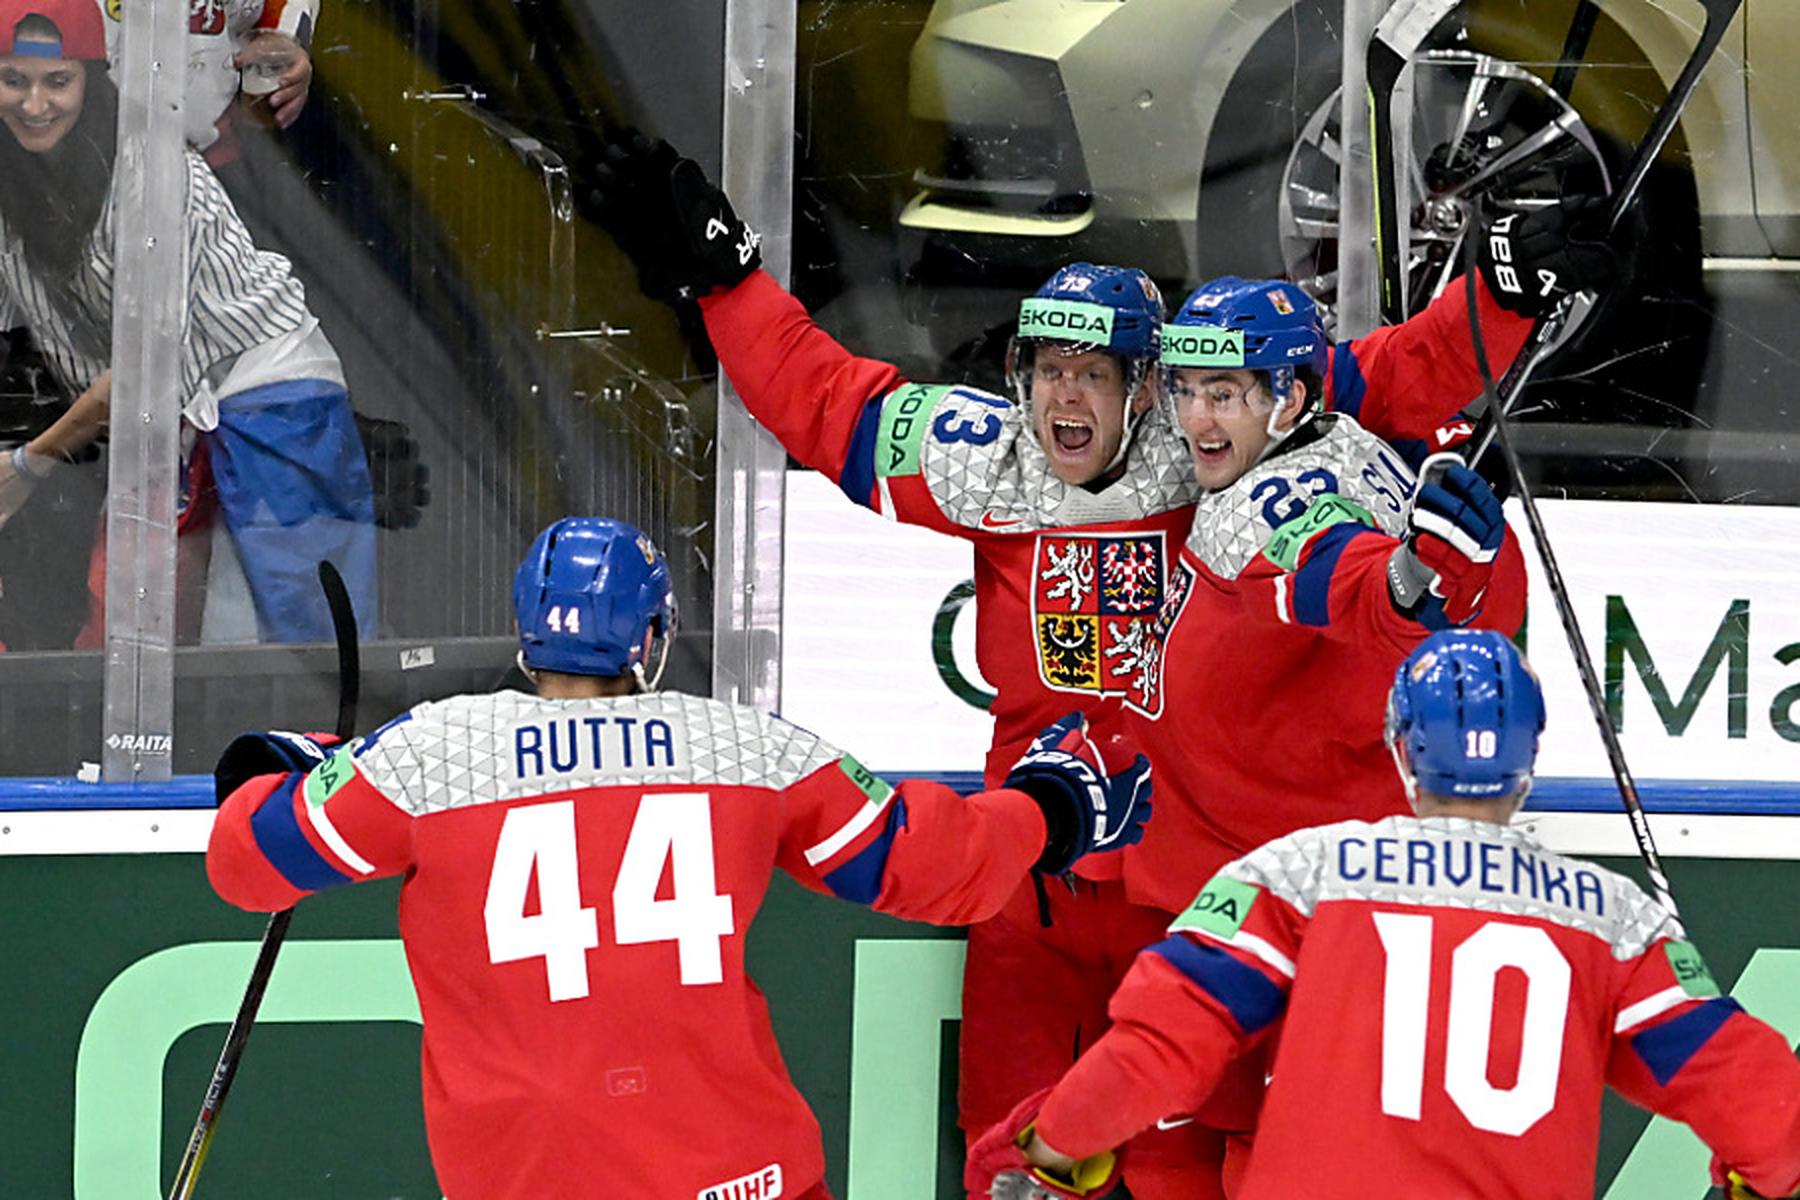 Prag: Gastgeber Tschechien erreicht Finale der Eishockey-WM